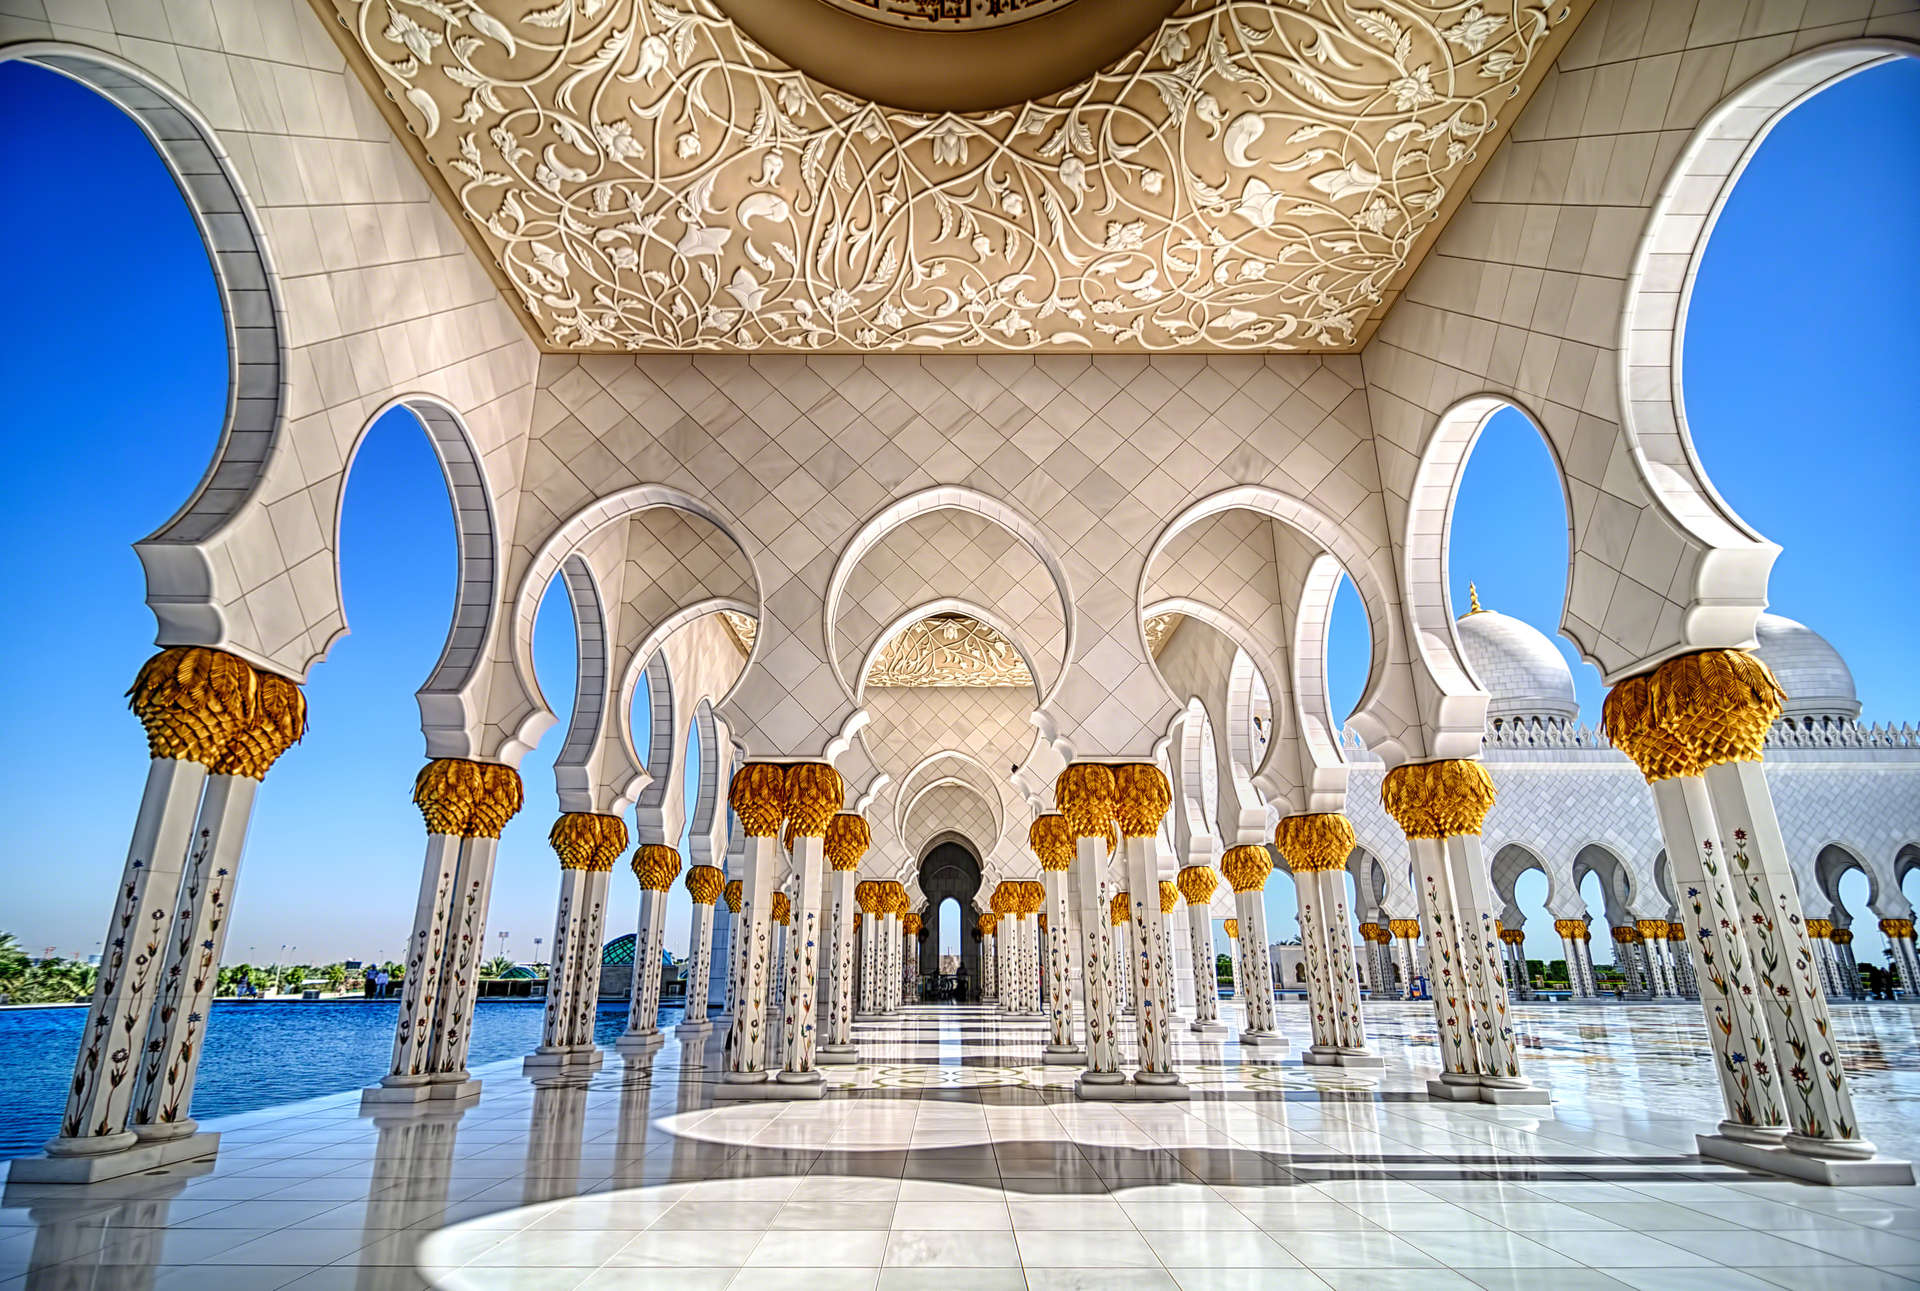 Der November ist eine angenehme Zeit, um die kulturellen und natürlichen Reichtümer von Abu Dhabi zu erkunden